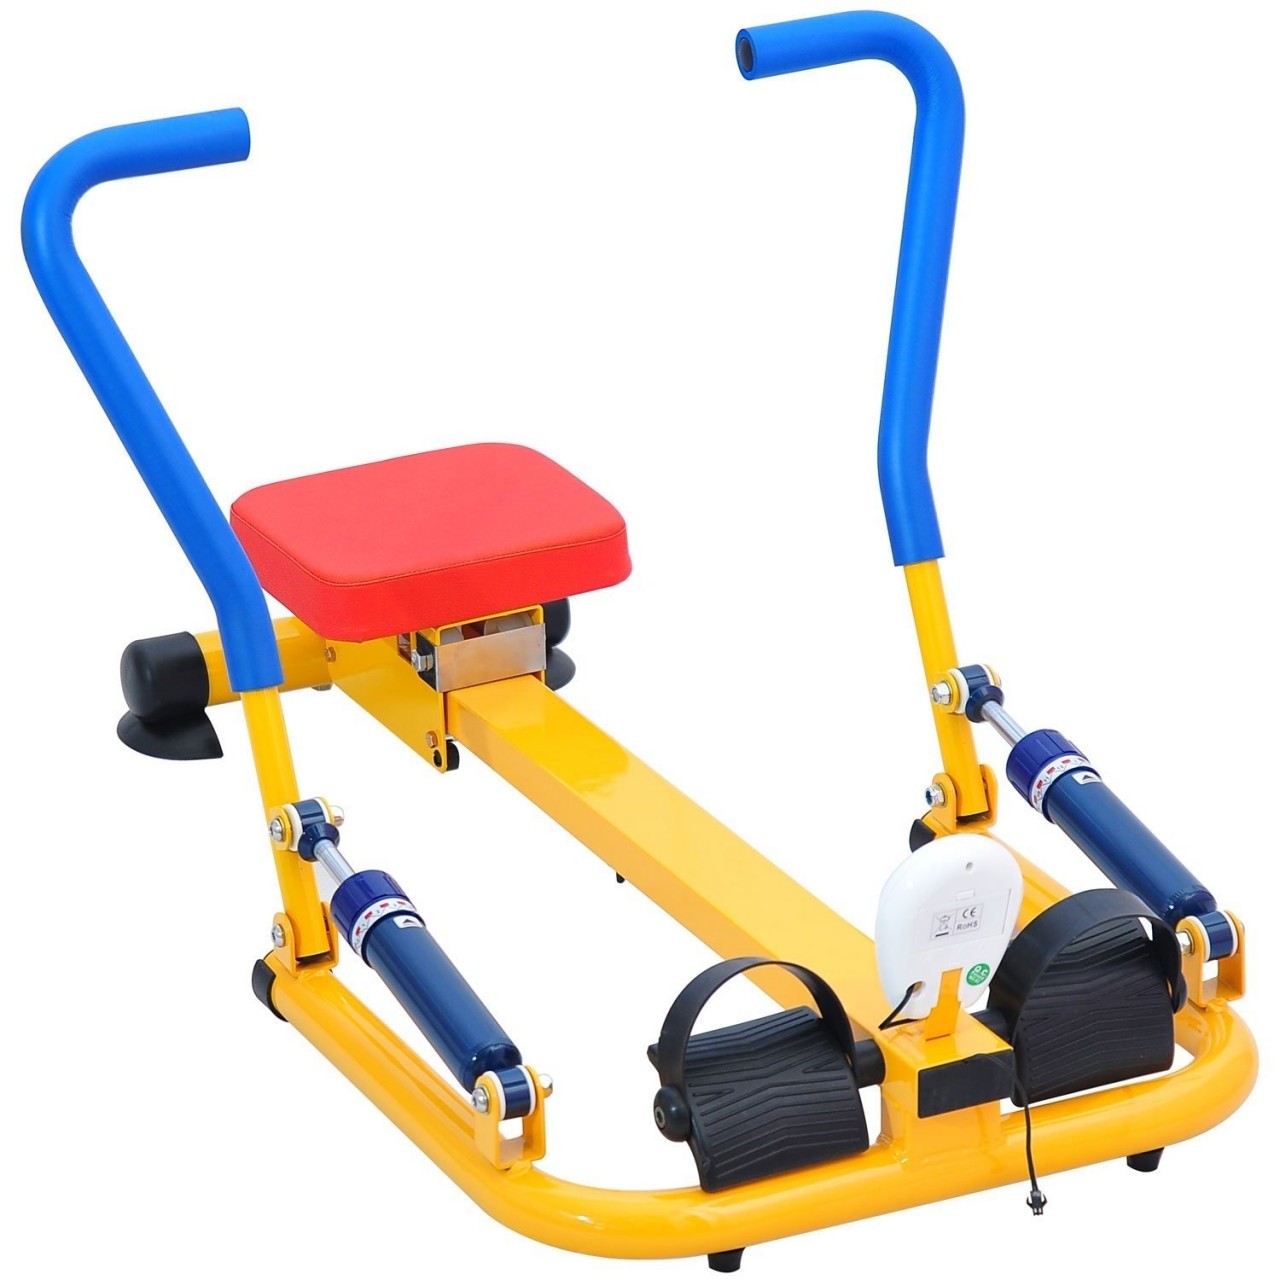 Exercise equipment for children